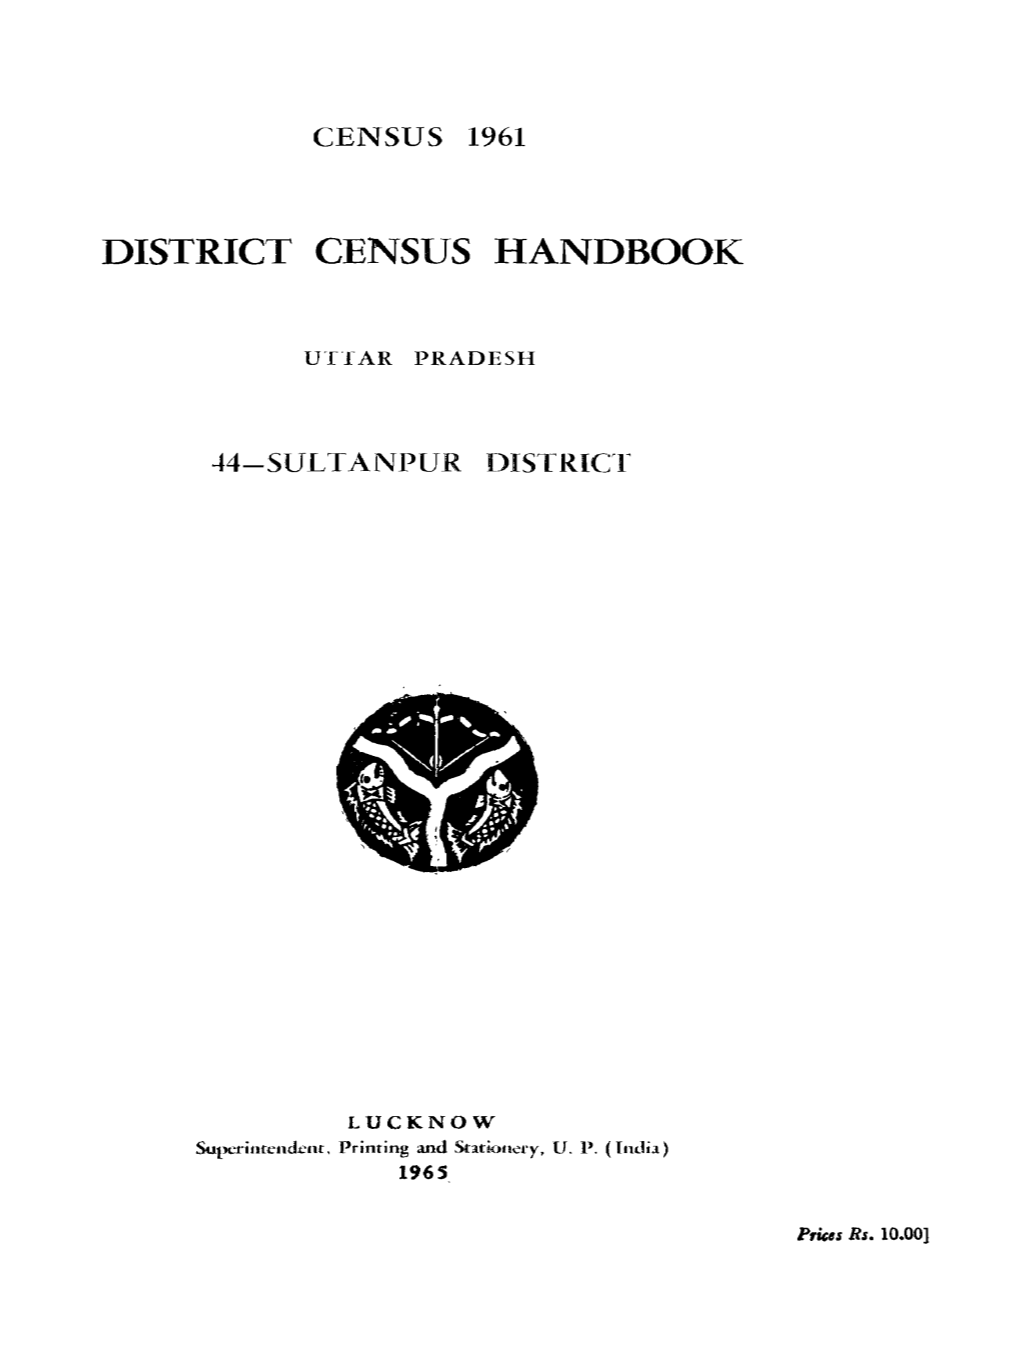 District Census Handbook, 44-Sultanpur, Uttar Pradesh